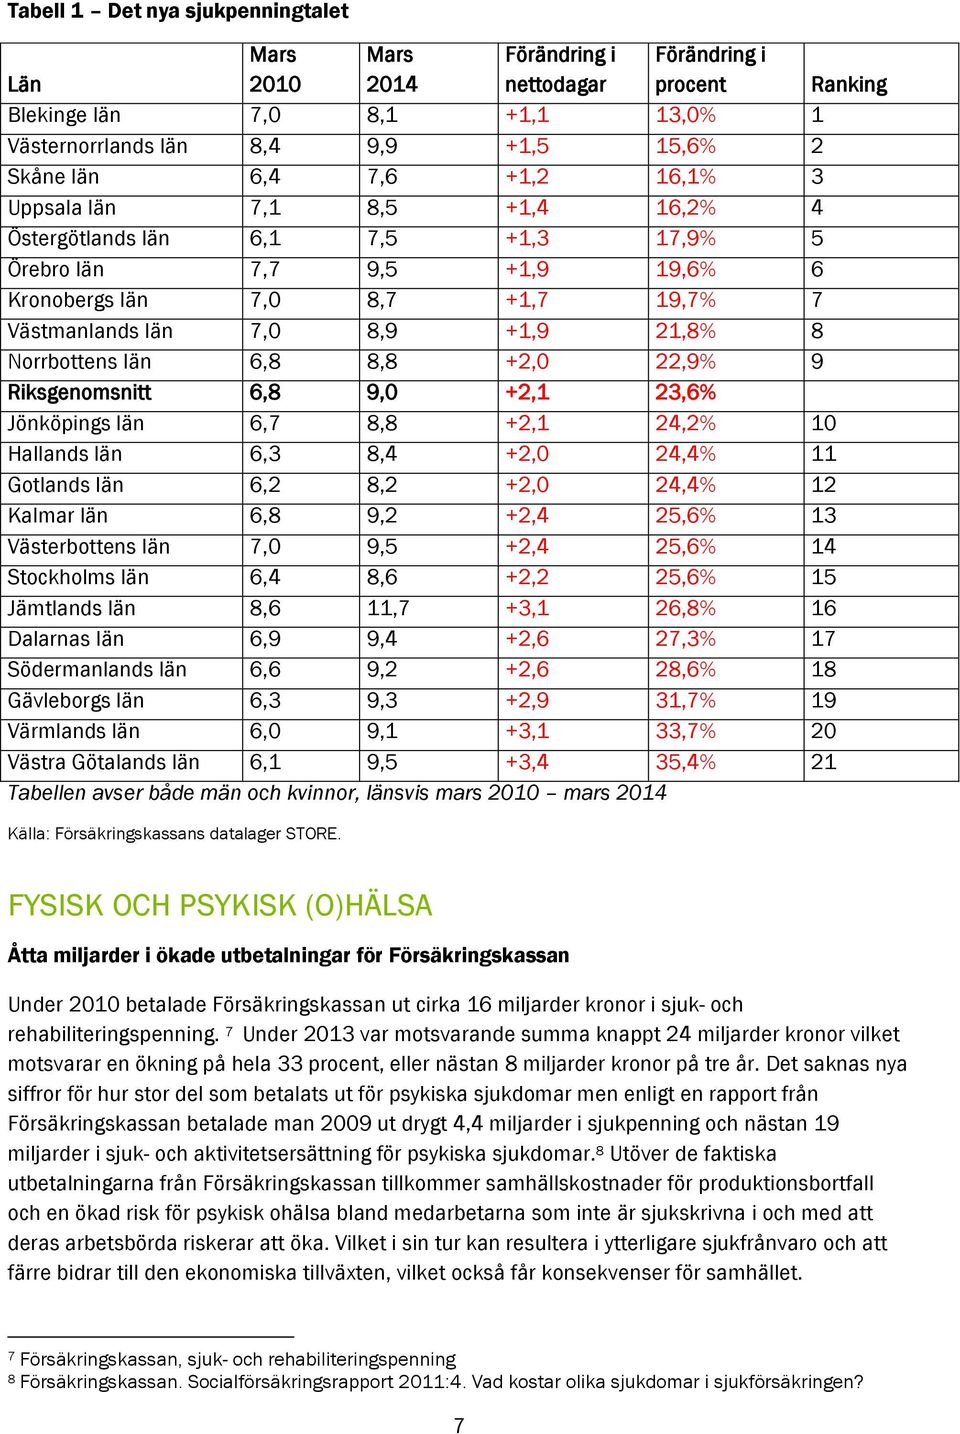 Norrbottens län 6,8 8,8 +2,0 22,9% 9 Riksgenomsnitt 6,8 9,0 +2,1 23,6% Jönköpings län 6,7 8,8 +2,1 24,2% 10 Hallands län 6,3 8,4 +2,0 24,4% 11 Gotlands län 6,2 8,2 +2,0 24,4% 12 Kalmar län 6,8 9,2